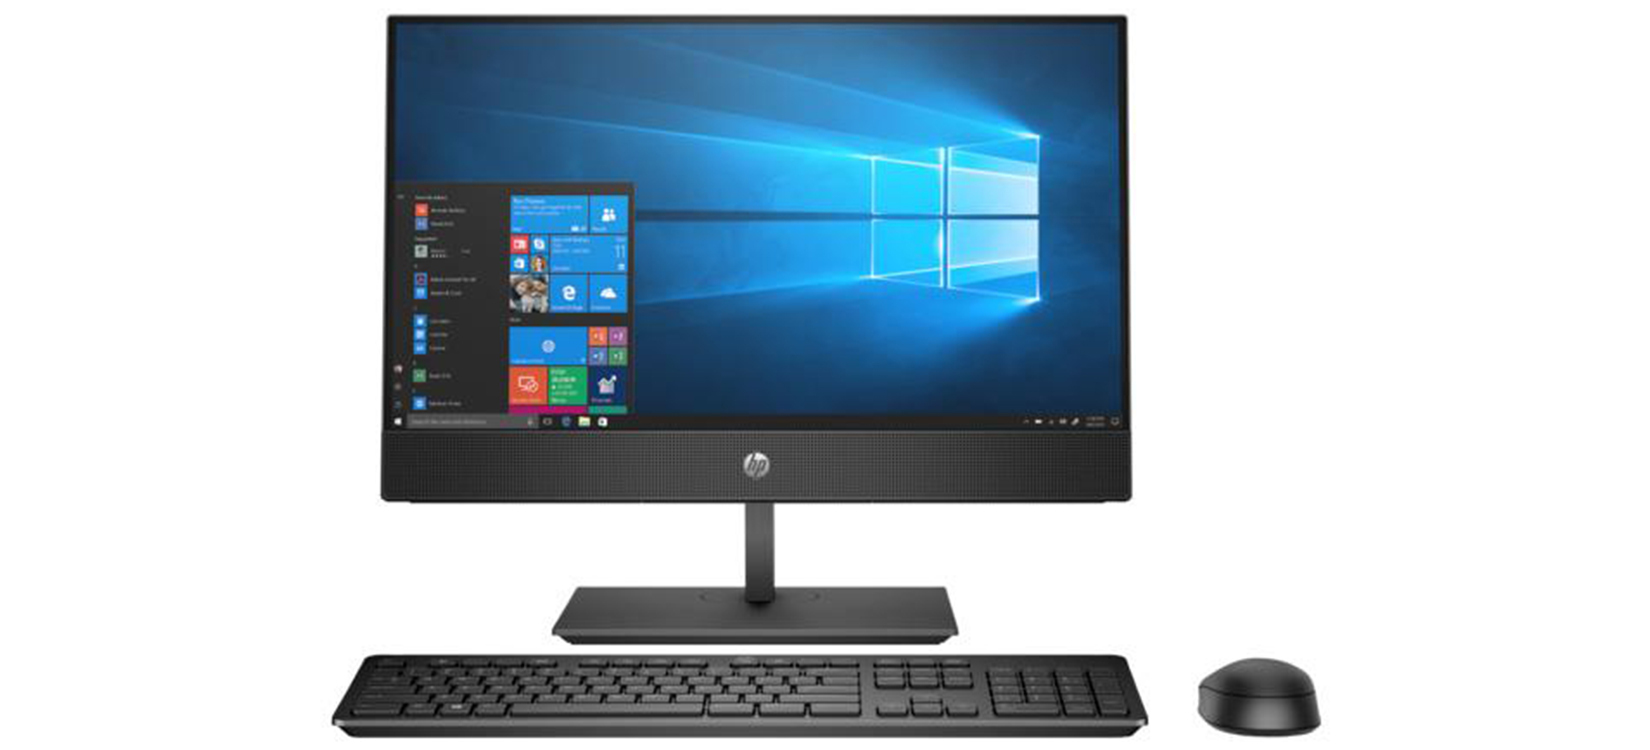 Máy tính để bàn HP All in One ProOne 600 G6 236C3PA - Intel core i7-10700T, 8GB RAM, SSD 512GB, AMD Radeon 630 Graphics, 21.5 inch